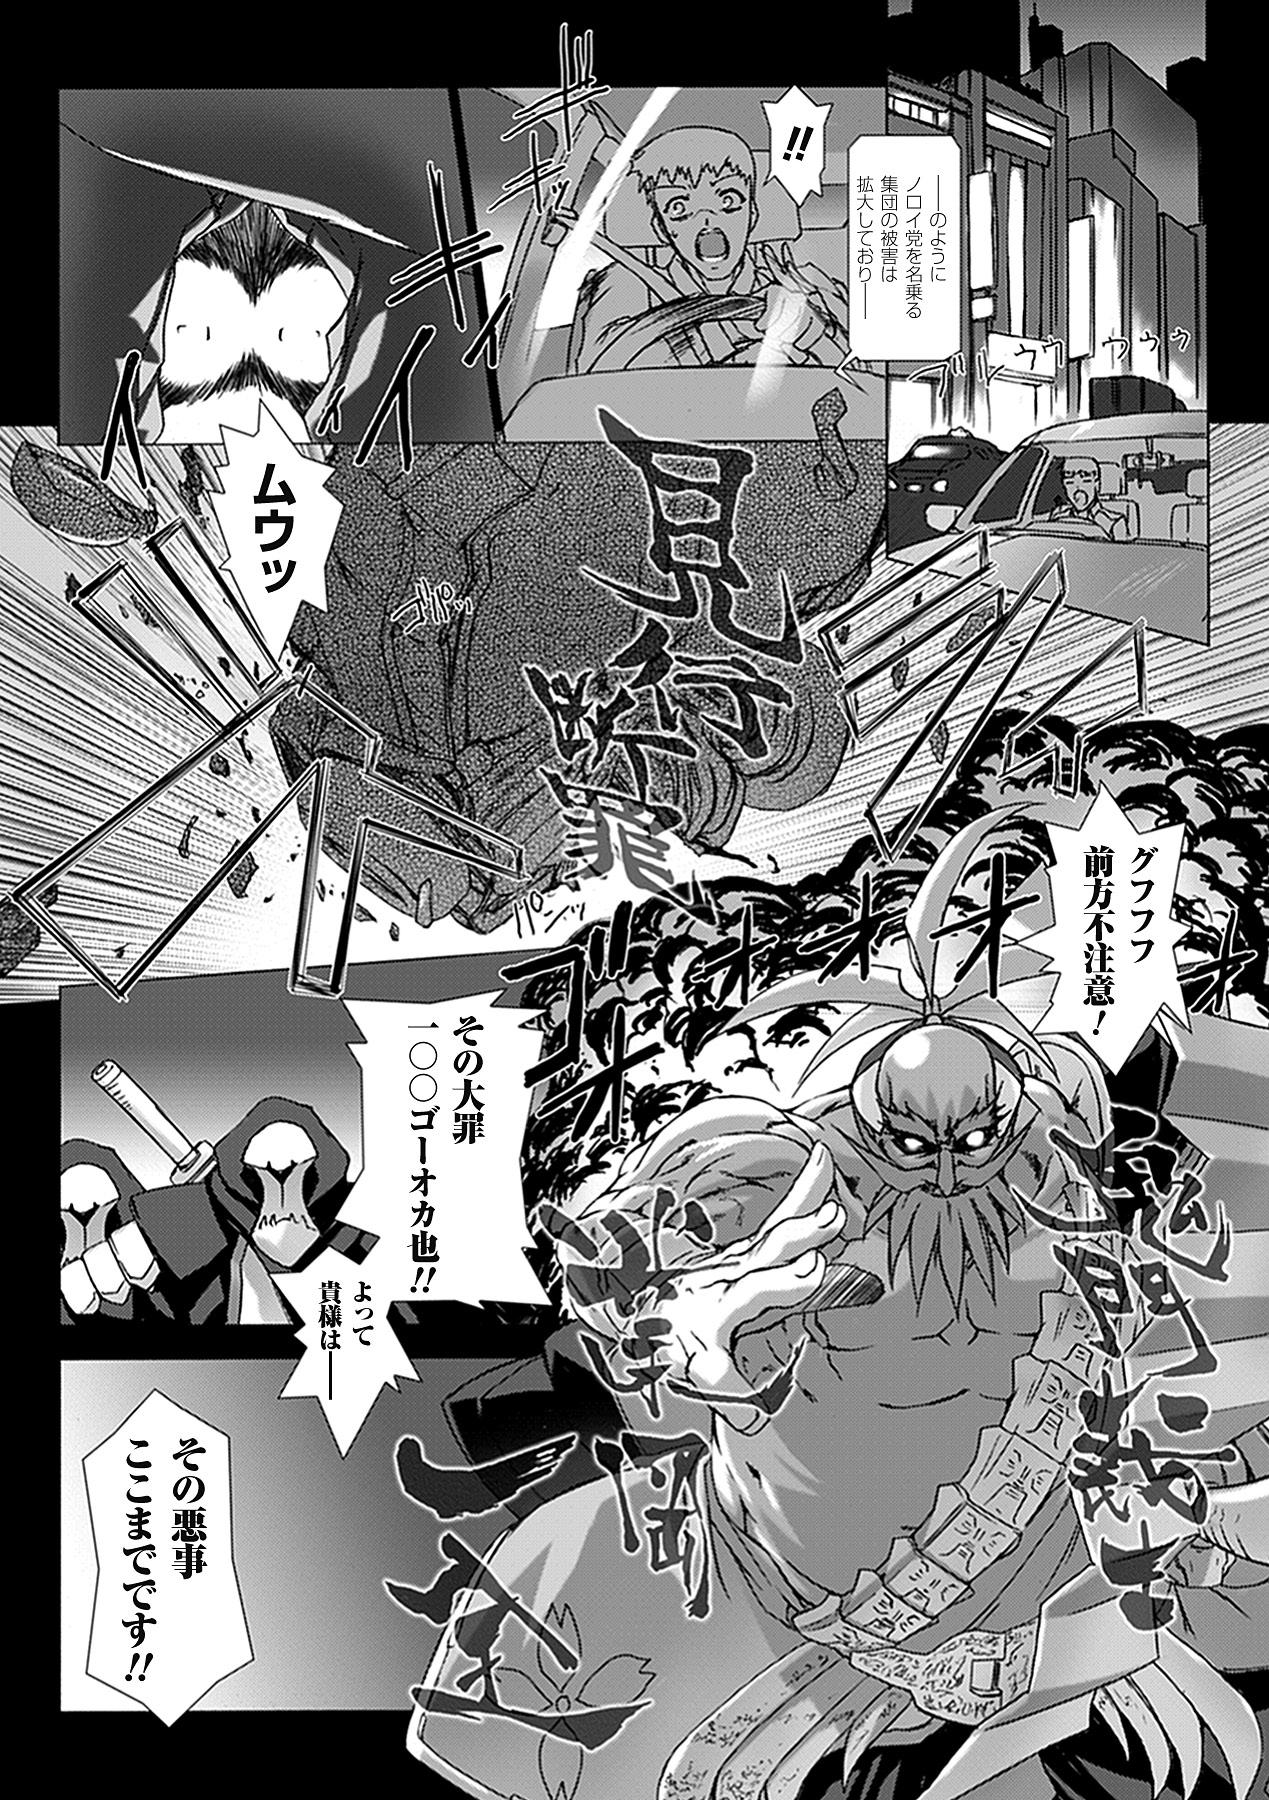 Lady Choukou Sennin Haruka: Yaiba no Maki - Beat blades haruka Gets - Page 11